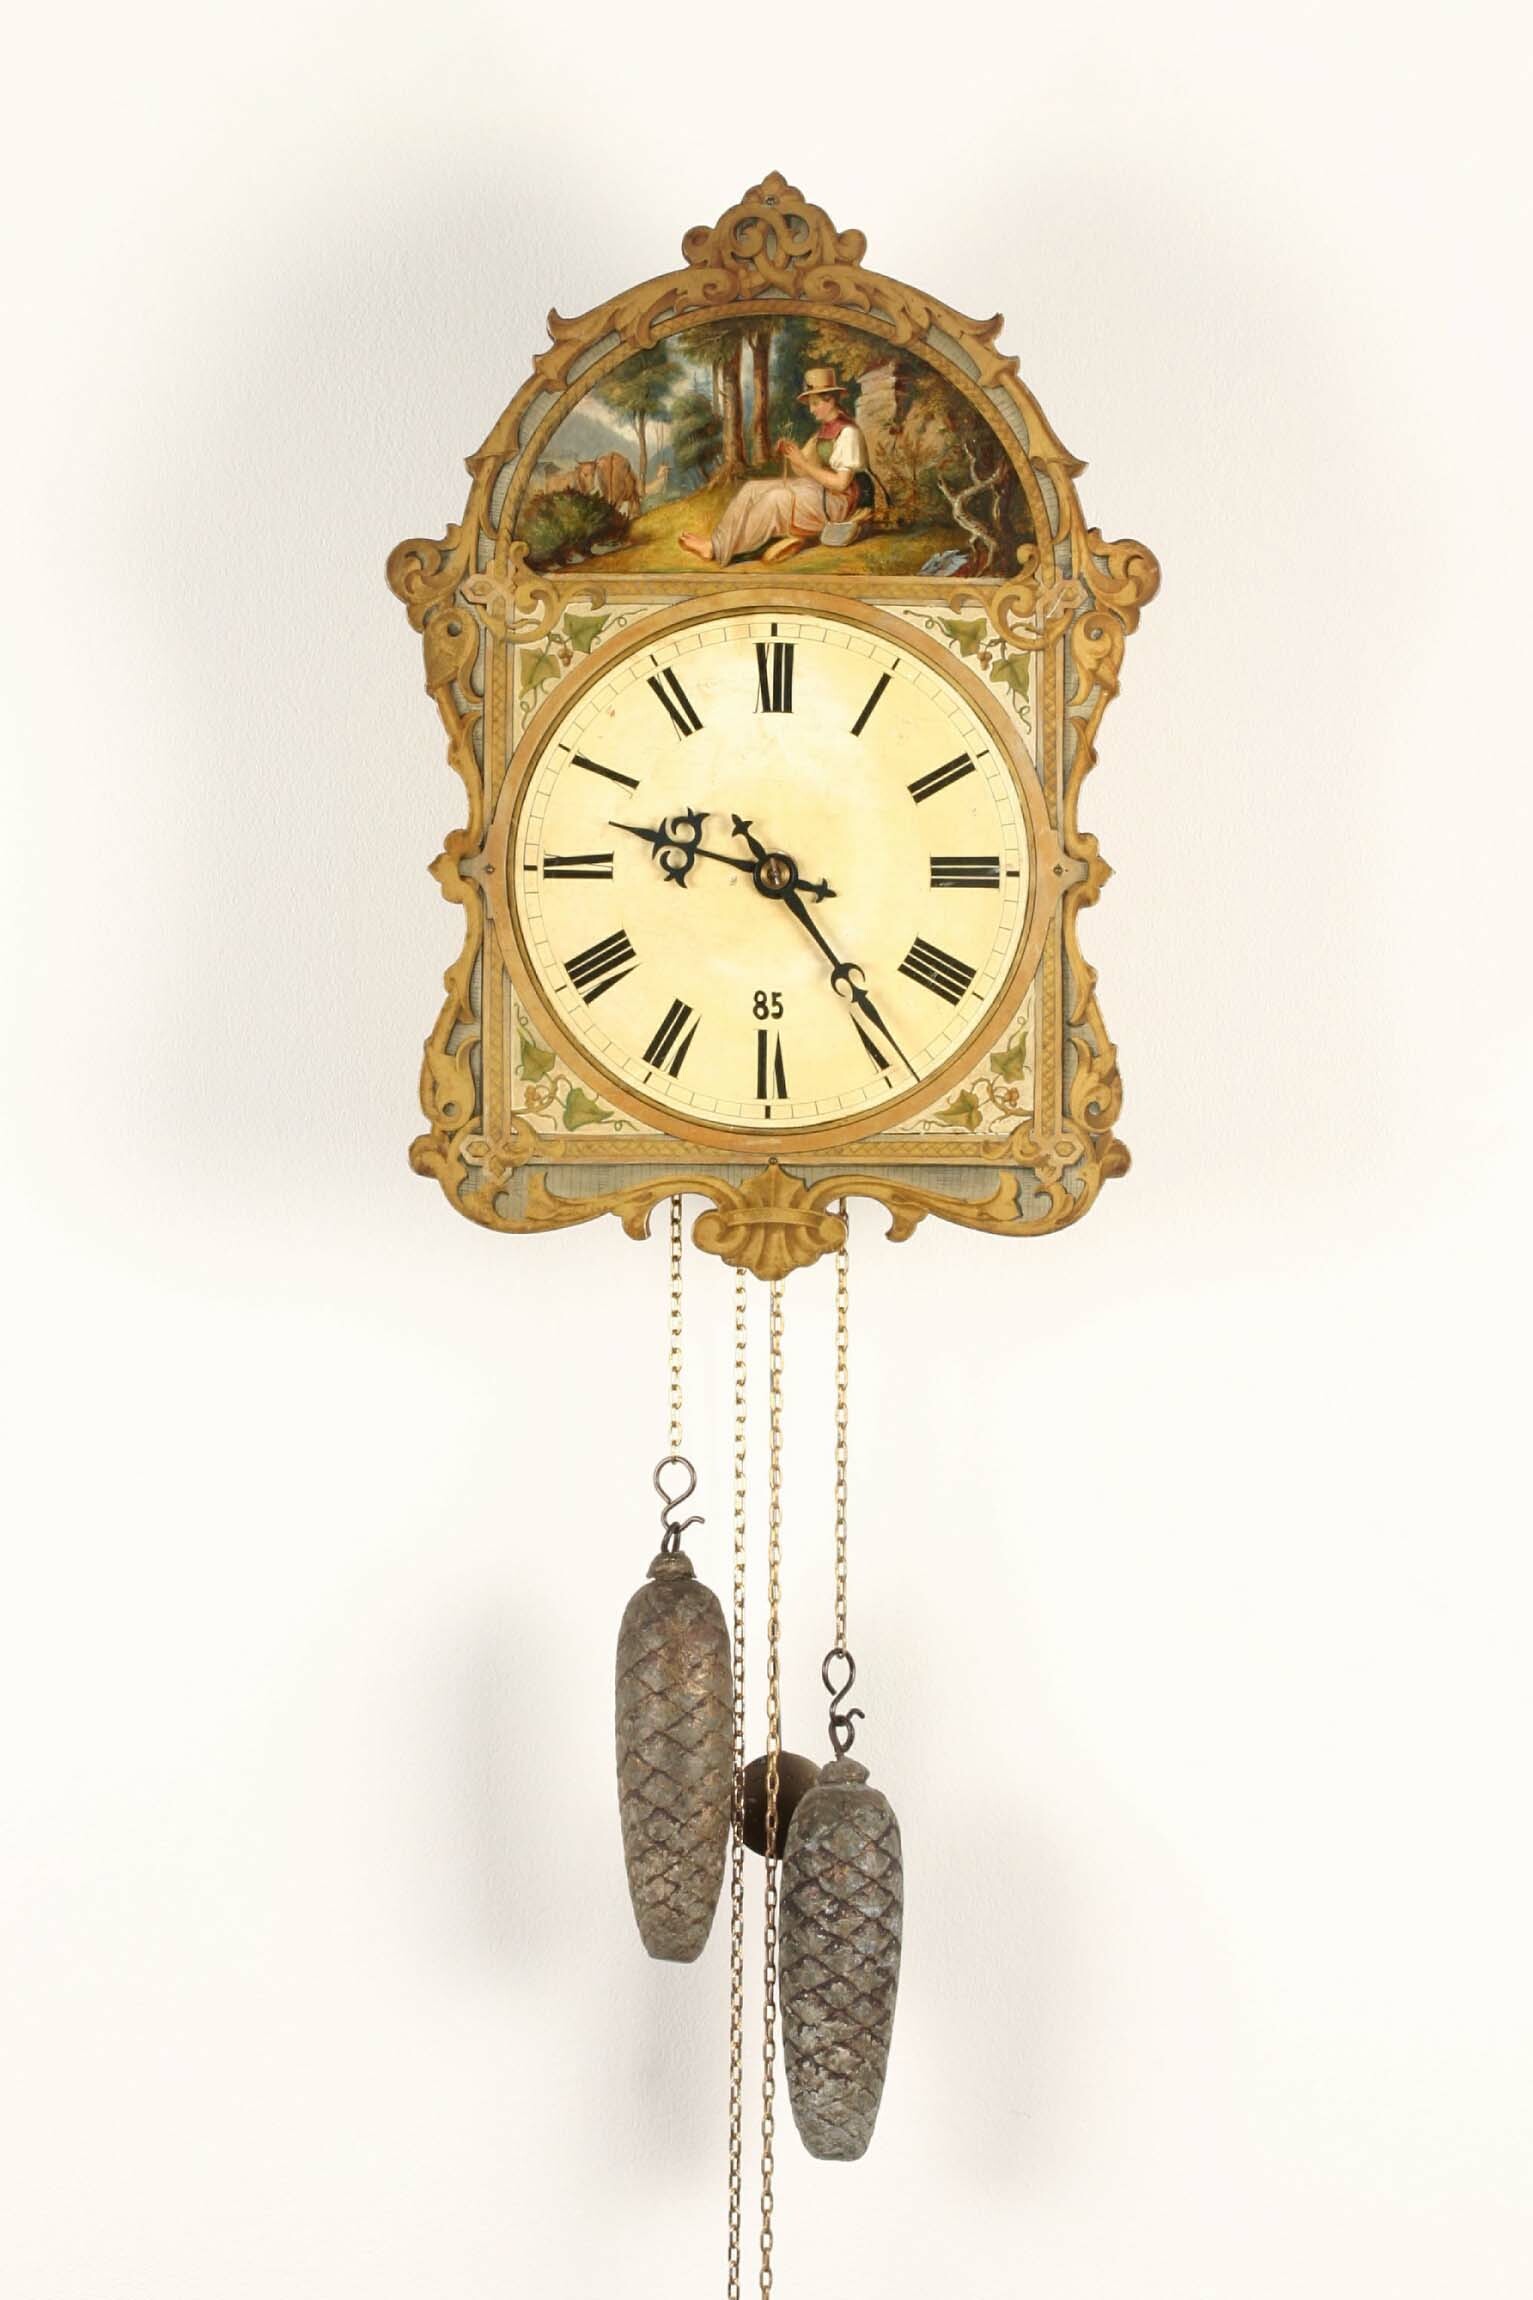 Wanduhr mit bemaltem Schild, Werk: Uhrmacherschule Furtwangen, Schild: Dold und Hettich, Furtwangen, 1862 (Deutsches Uhrenmuseum CC BY-SA)